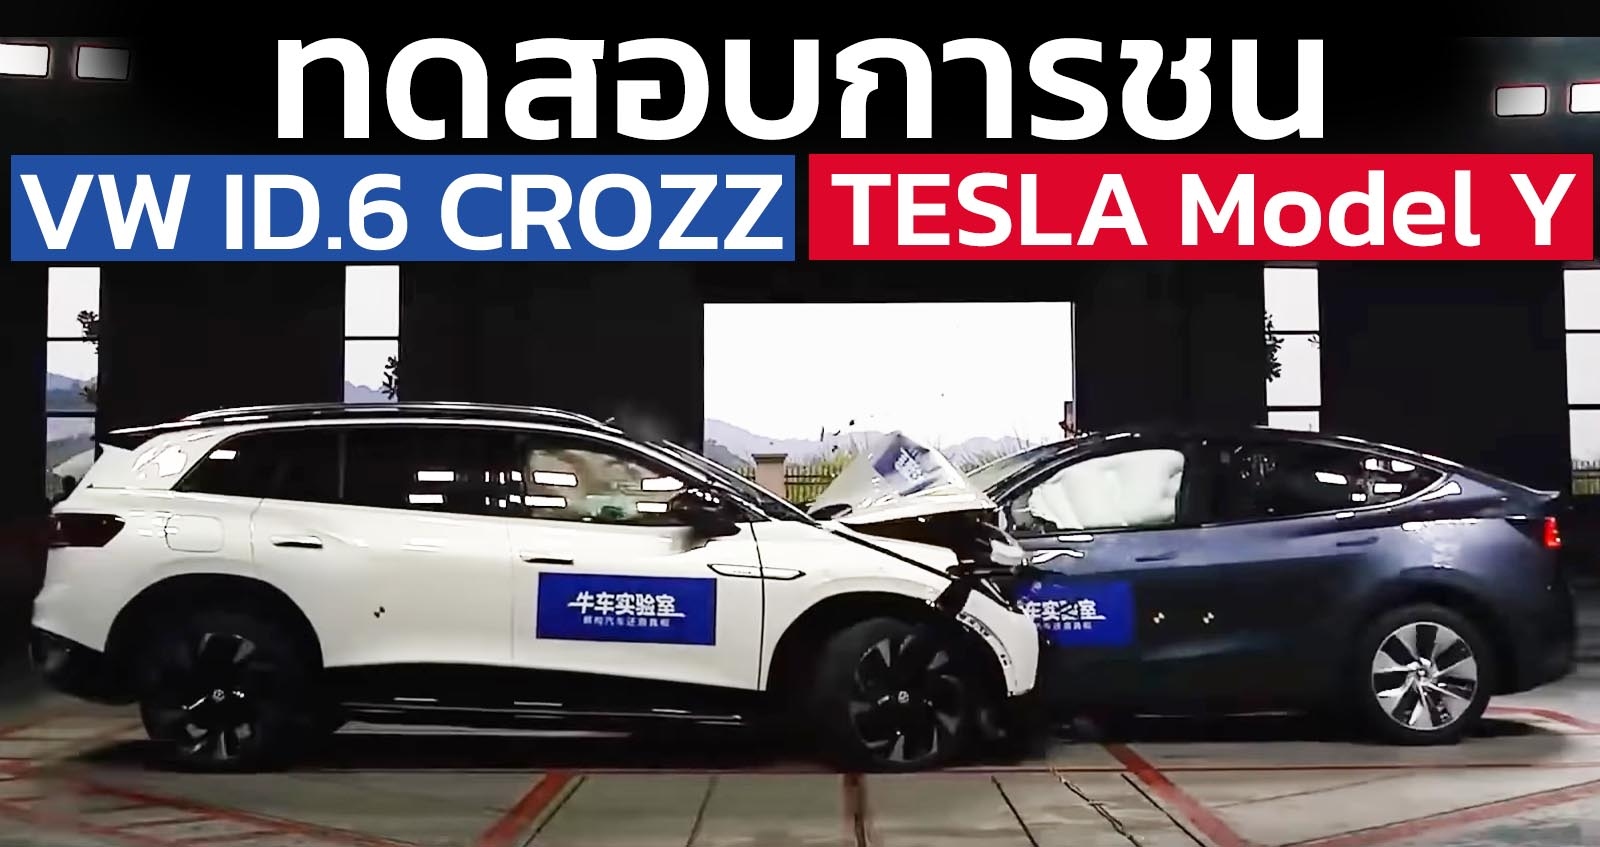 ทดสอบการชนกัน Tesla Model Y Vs Volkswagen ID.6 CROZZ